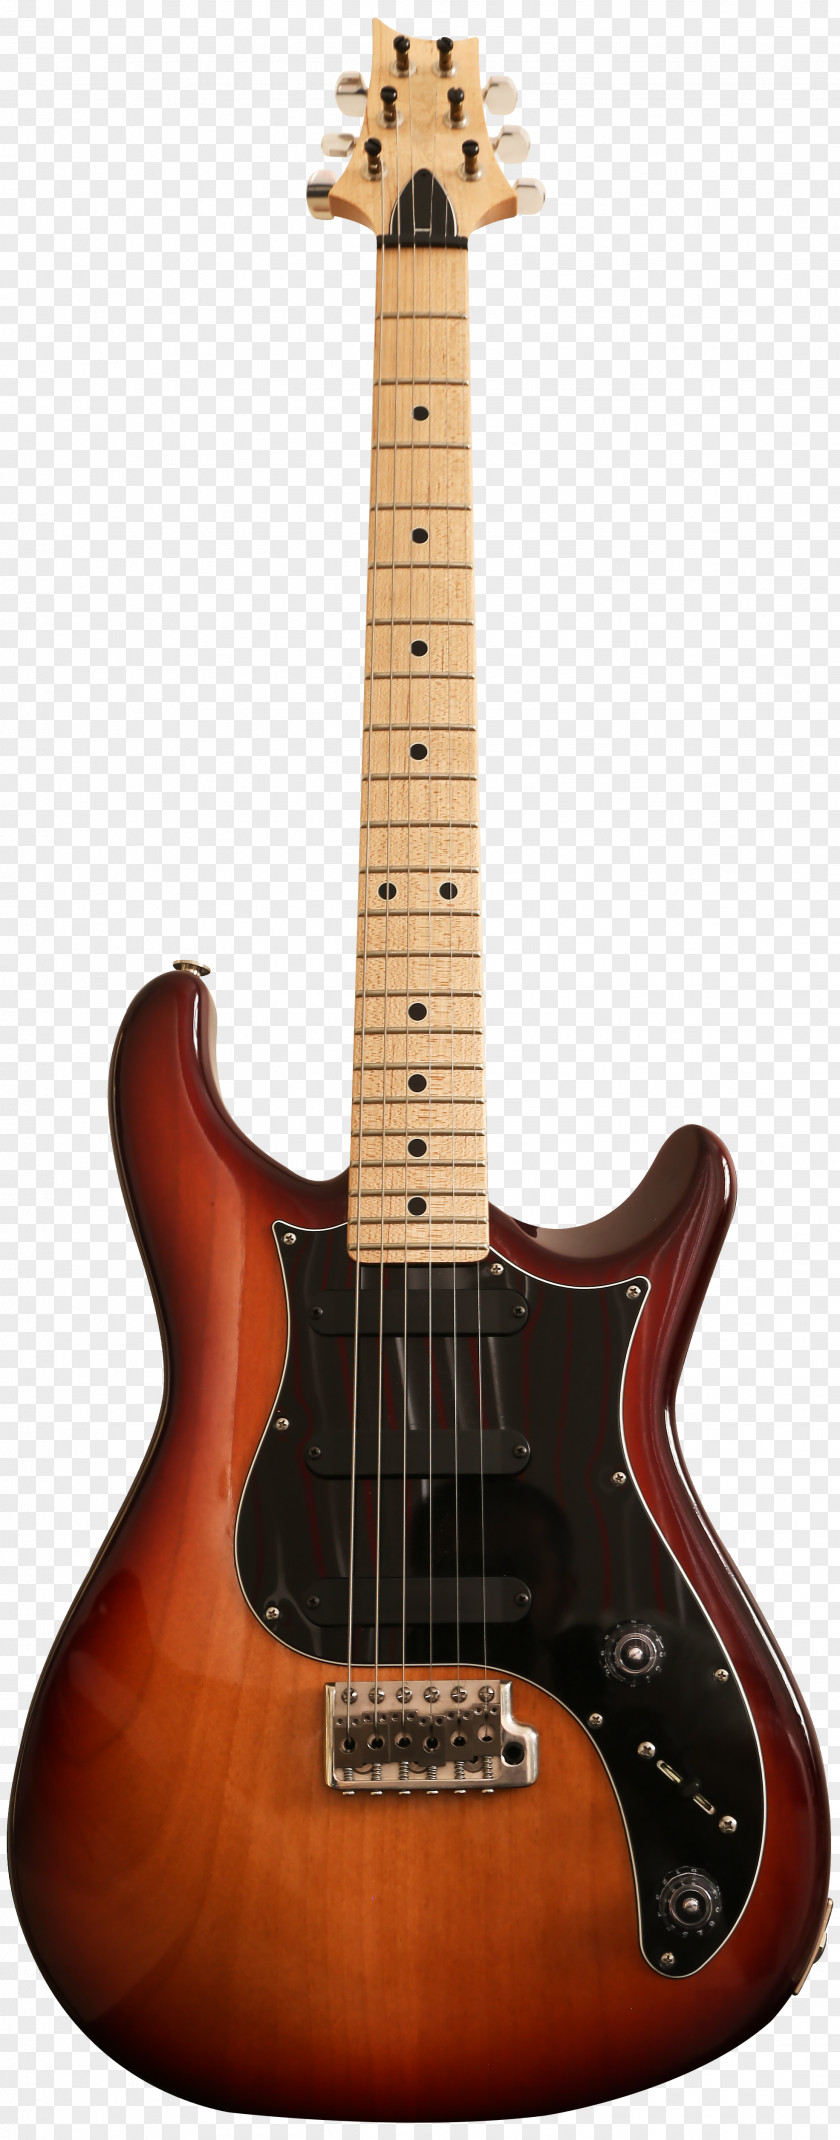 Guitar Squier Jagmaster Fender Jaguar Stratocaster Telecaster Jazzmaster PNG